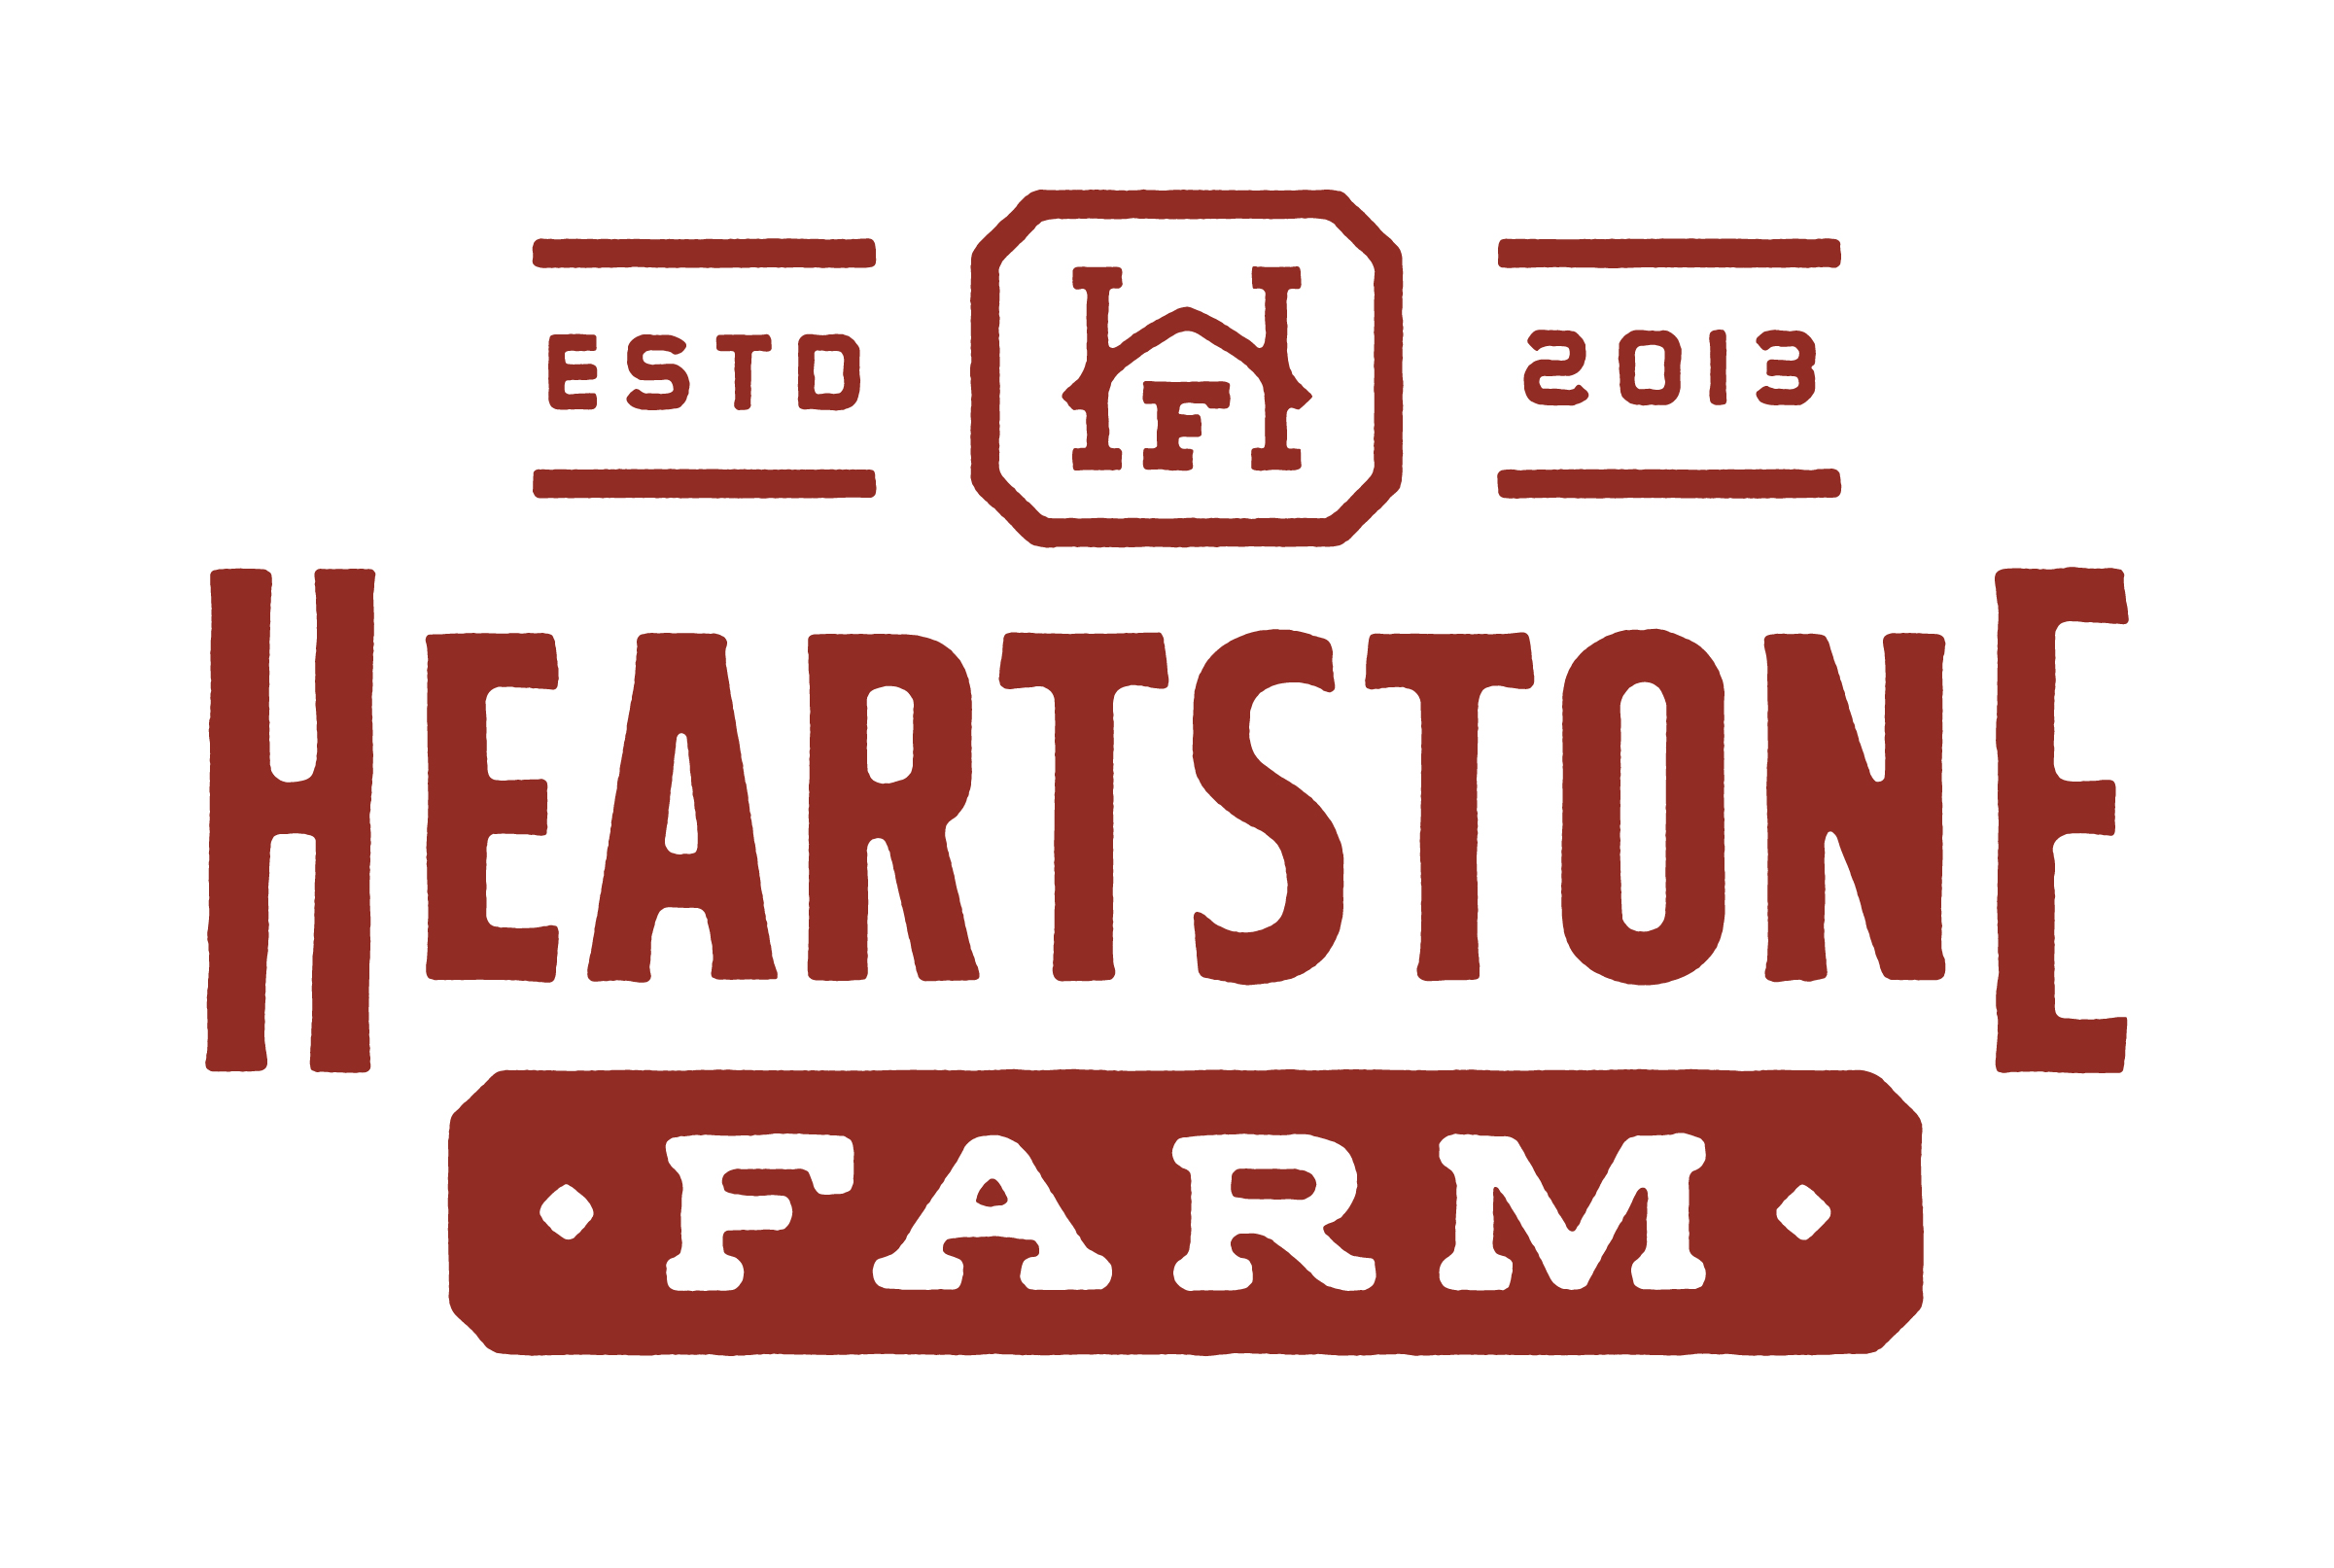 Heartstone Farm Logo